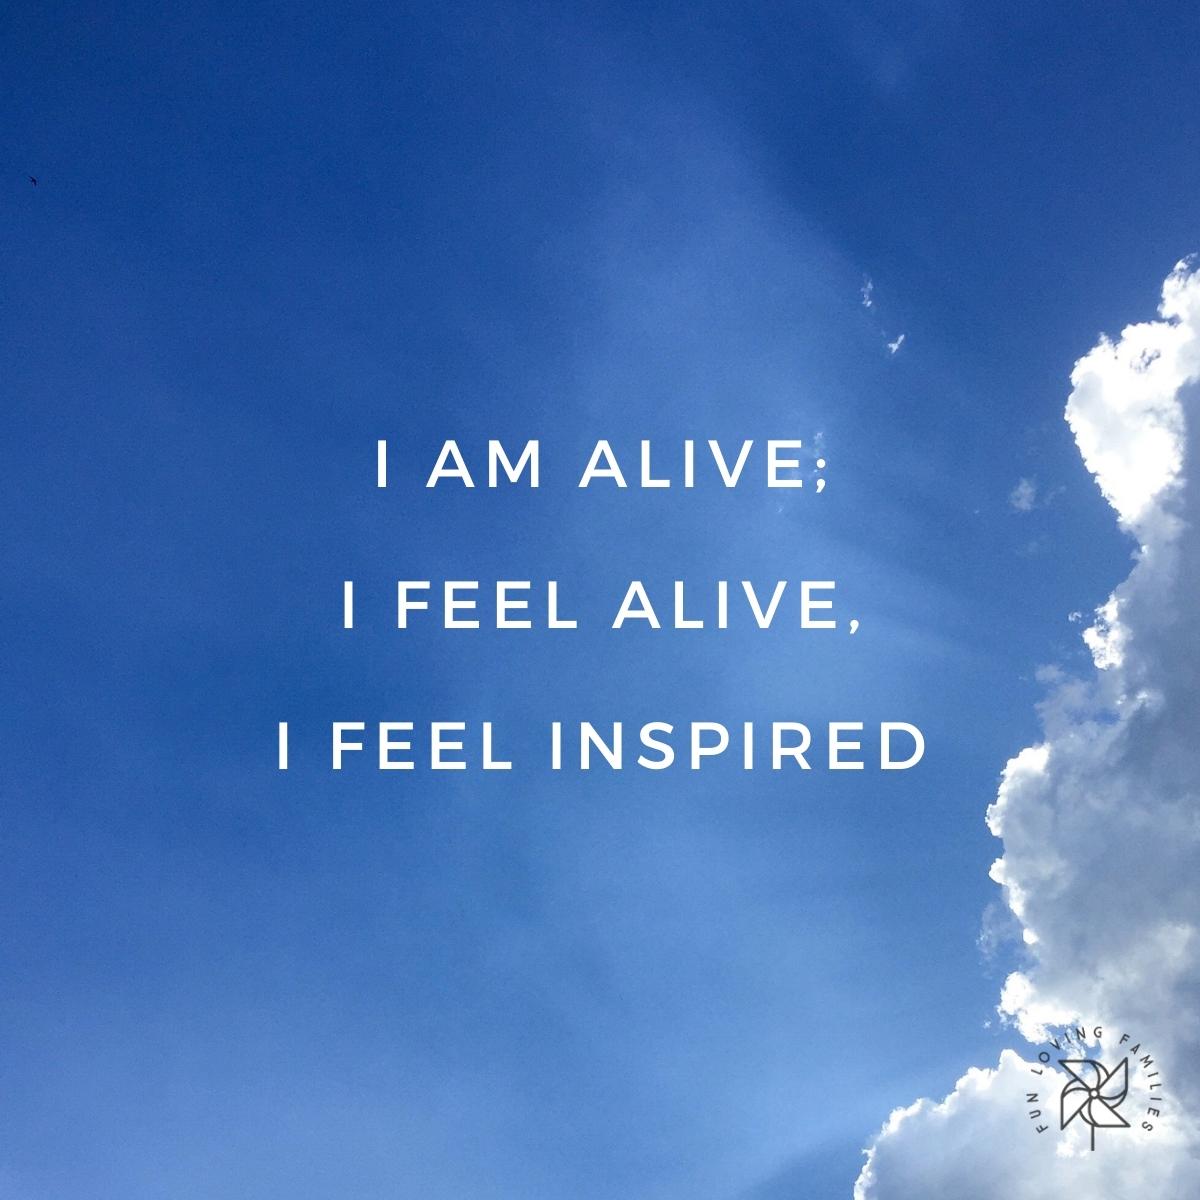 I am alive; I feel alive, I feel inspired affirmation